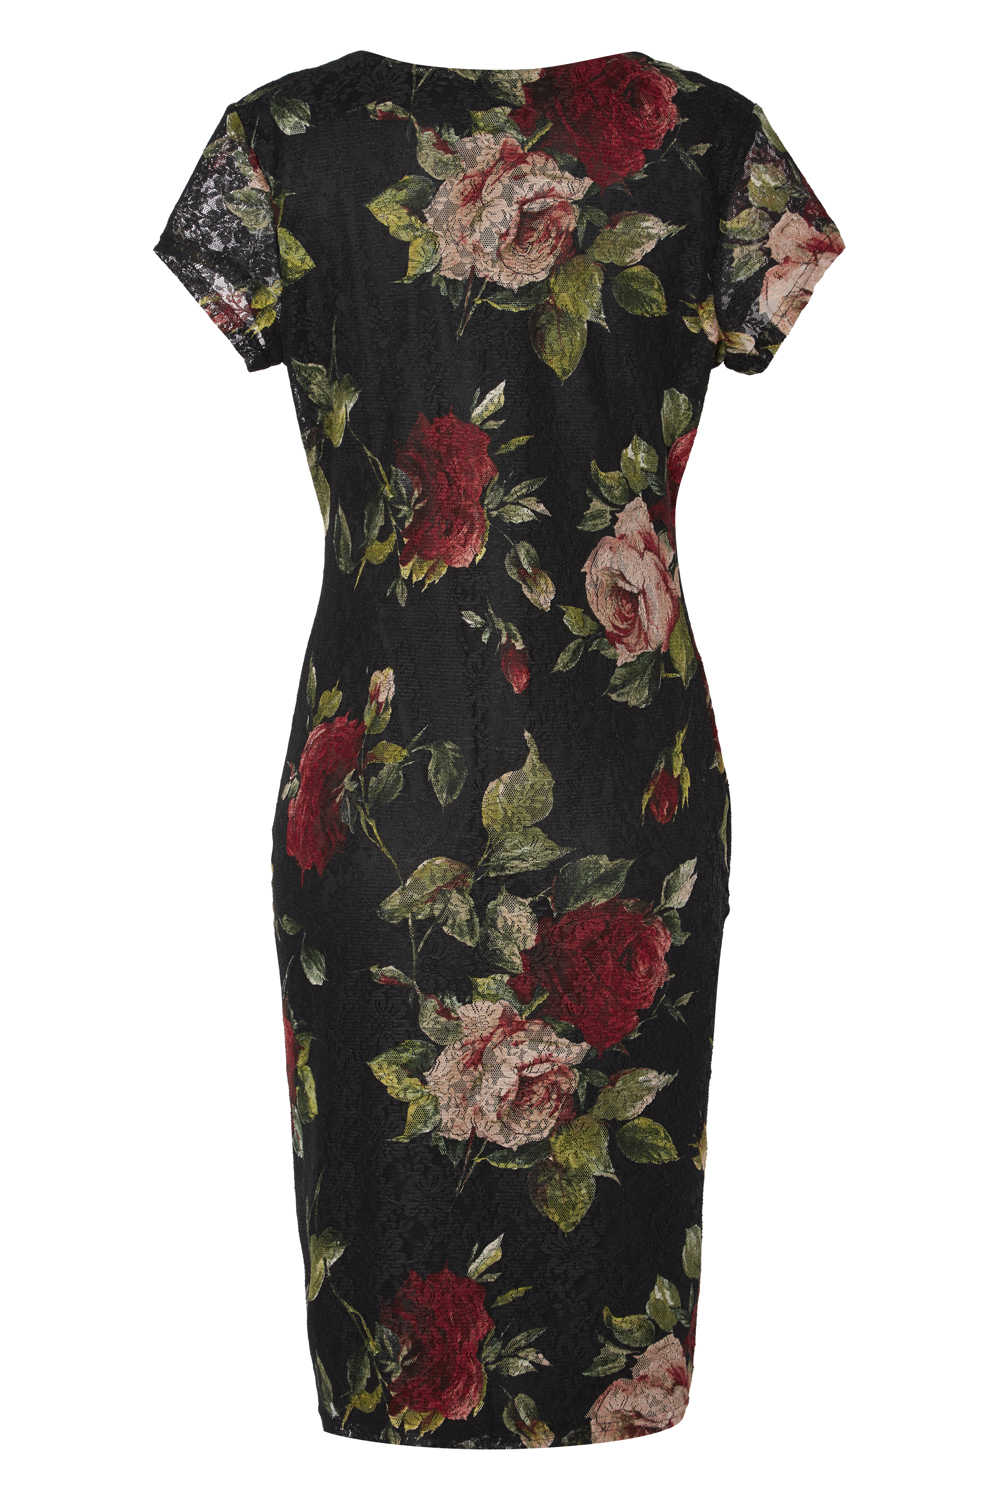 Floral Rose Printed Lace Dress in Black - Roman Originals UK